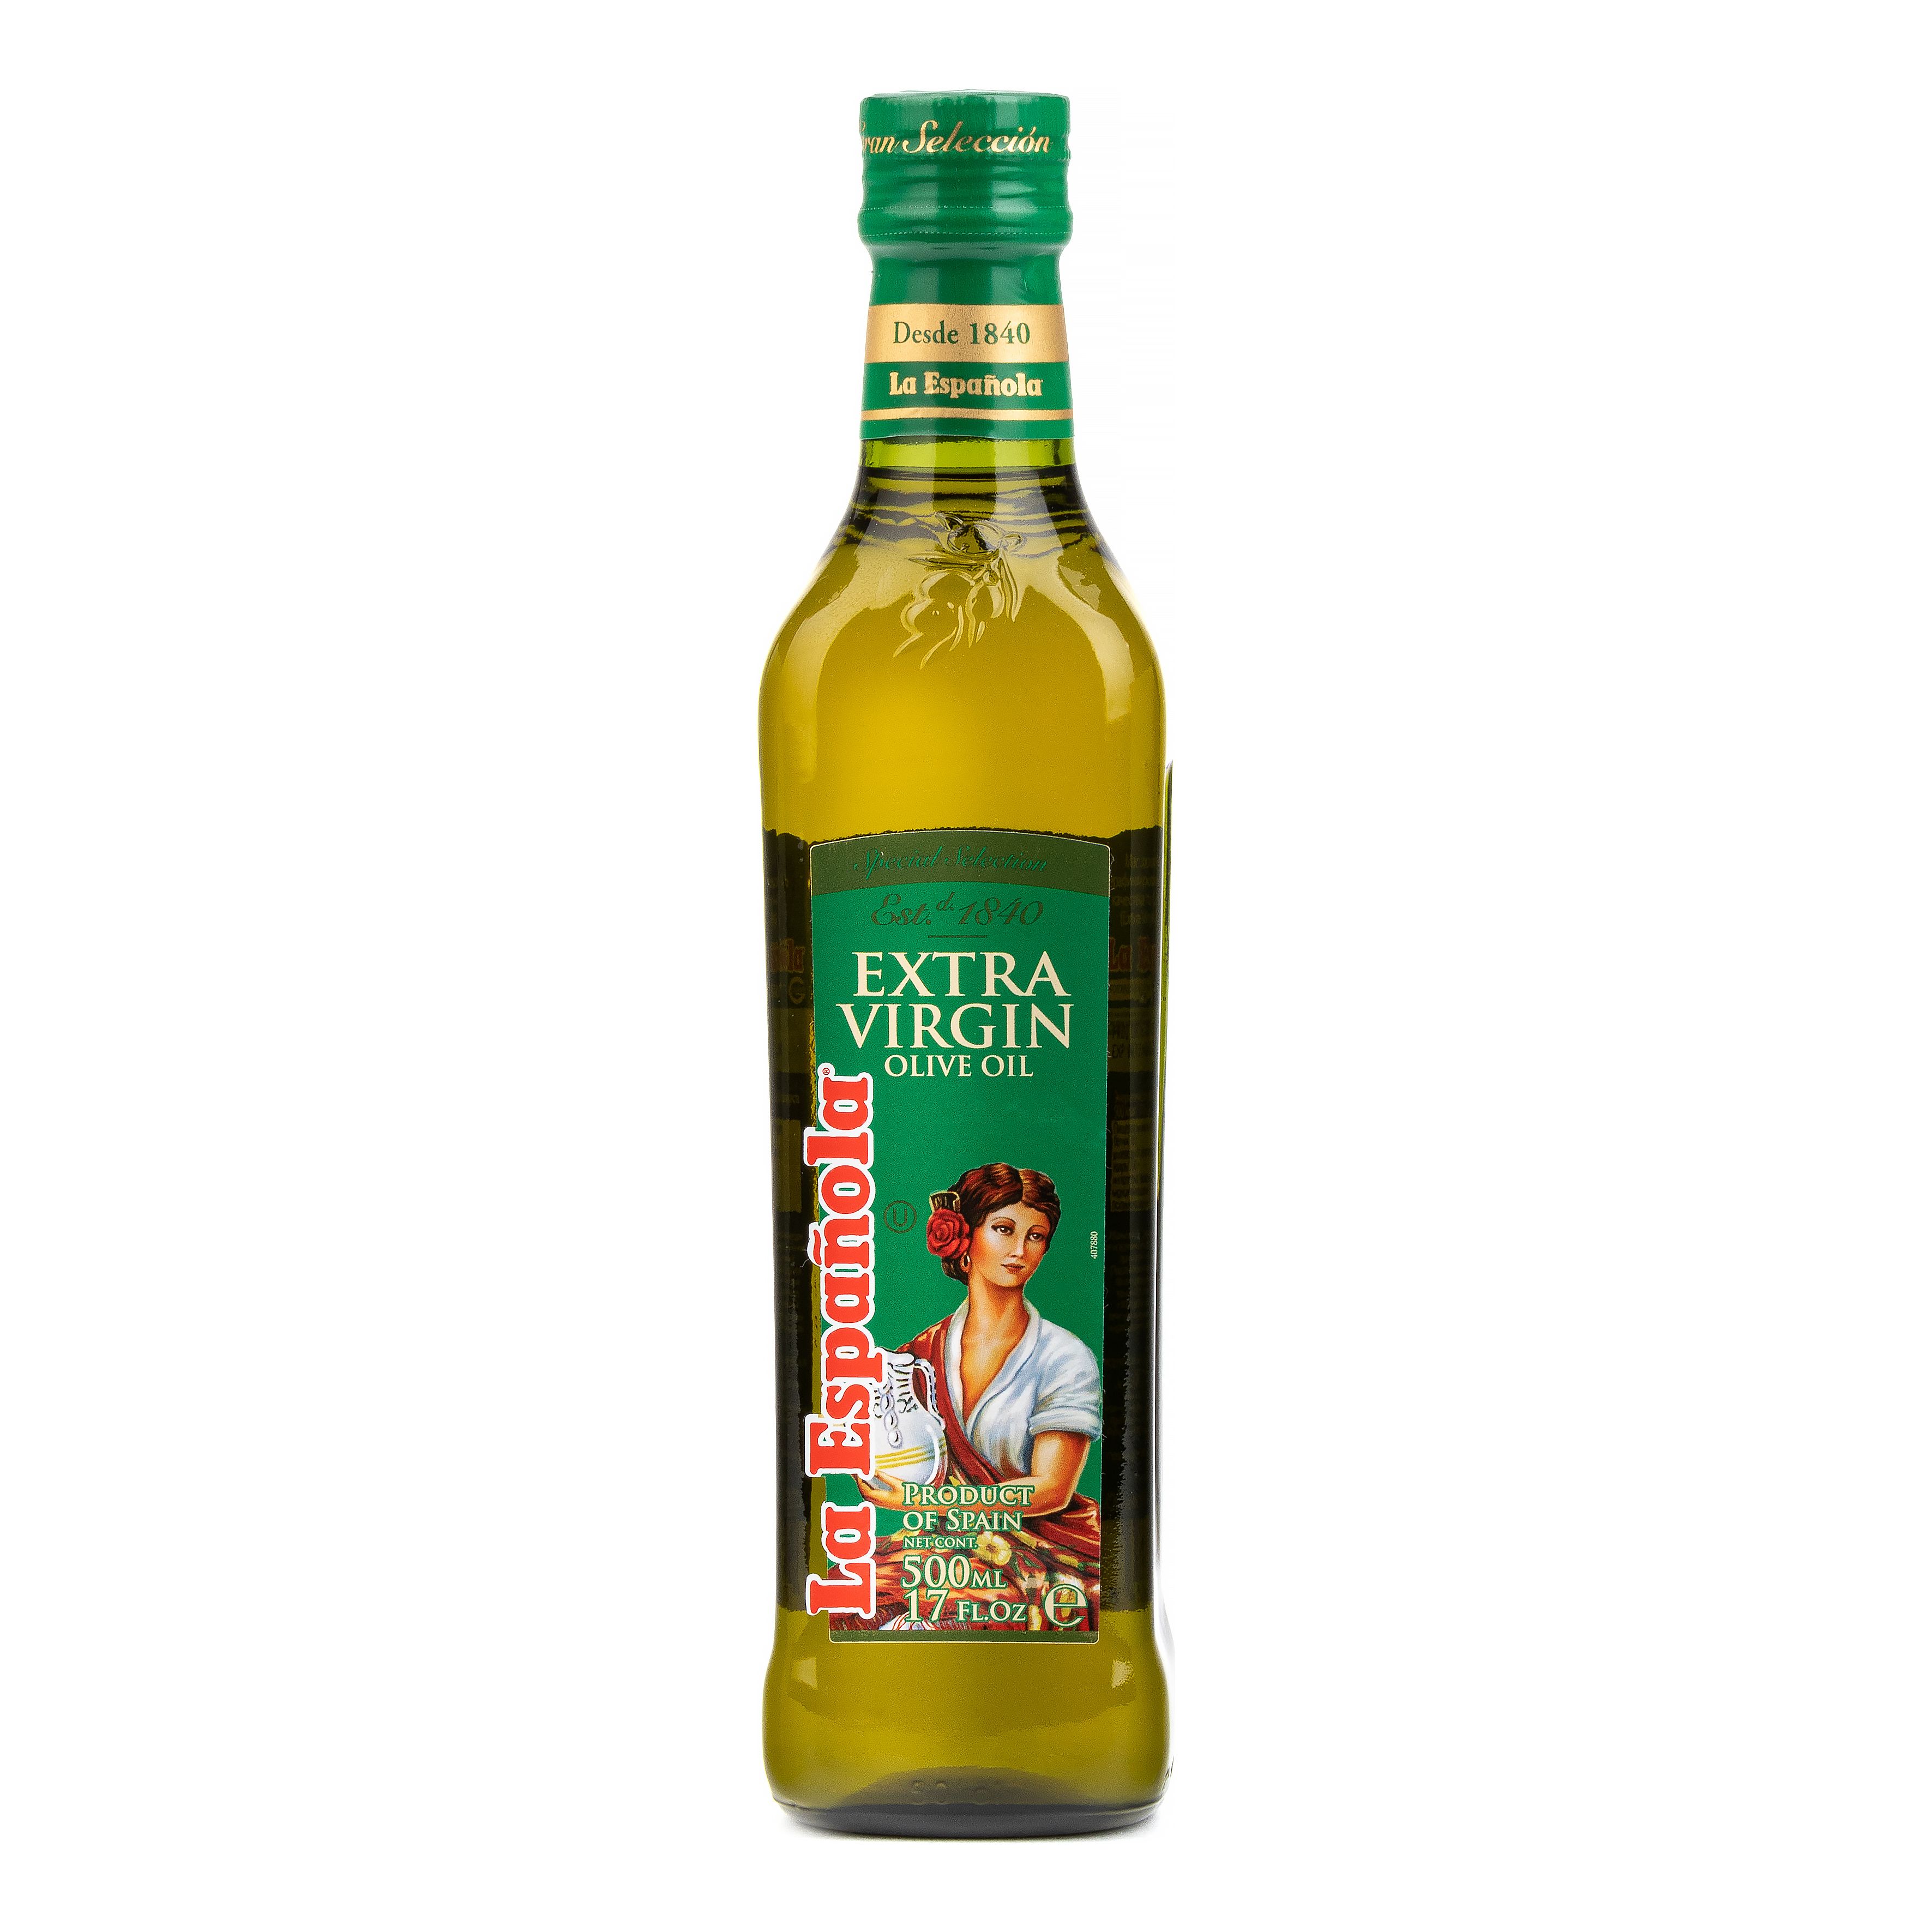 Оливковое масло 0.5. Масло оливковое ла Эспаньола Экстра Вирджин 0,5л ст/б. Масло оливковое la espanola. Масло оливковое ла Эспаньола Экстра Вирджин 0,5л. La espanola масло оливковое Extra.